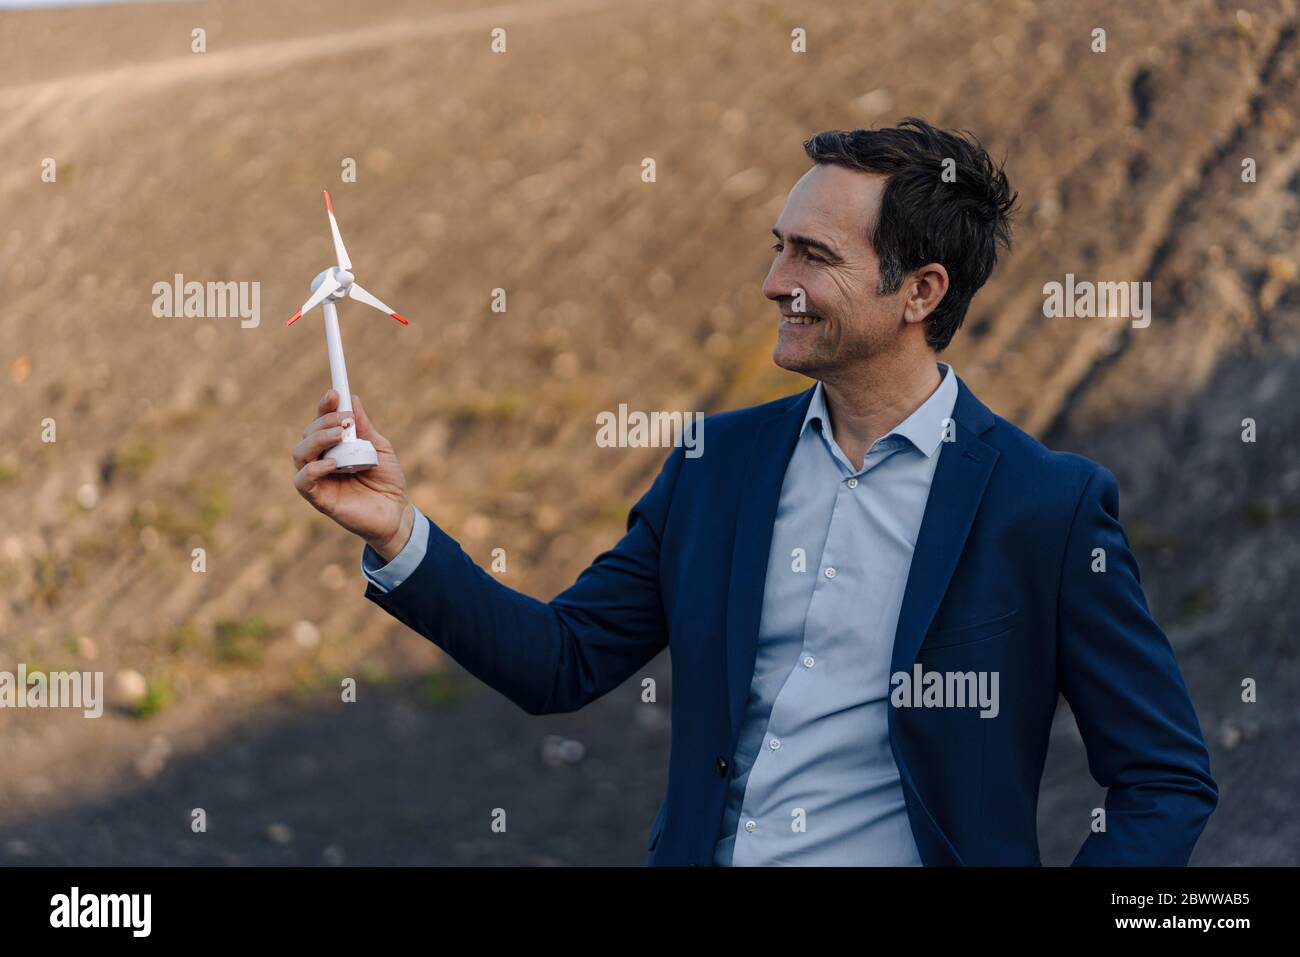 Glücklicher reifer Geschäftsmann auf einem stillgehaltenem Minenspitze, der Windturbinenmodell hält Stockfoto